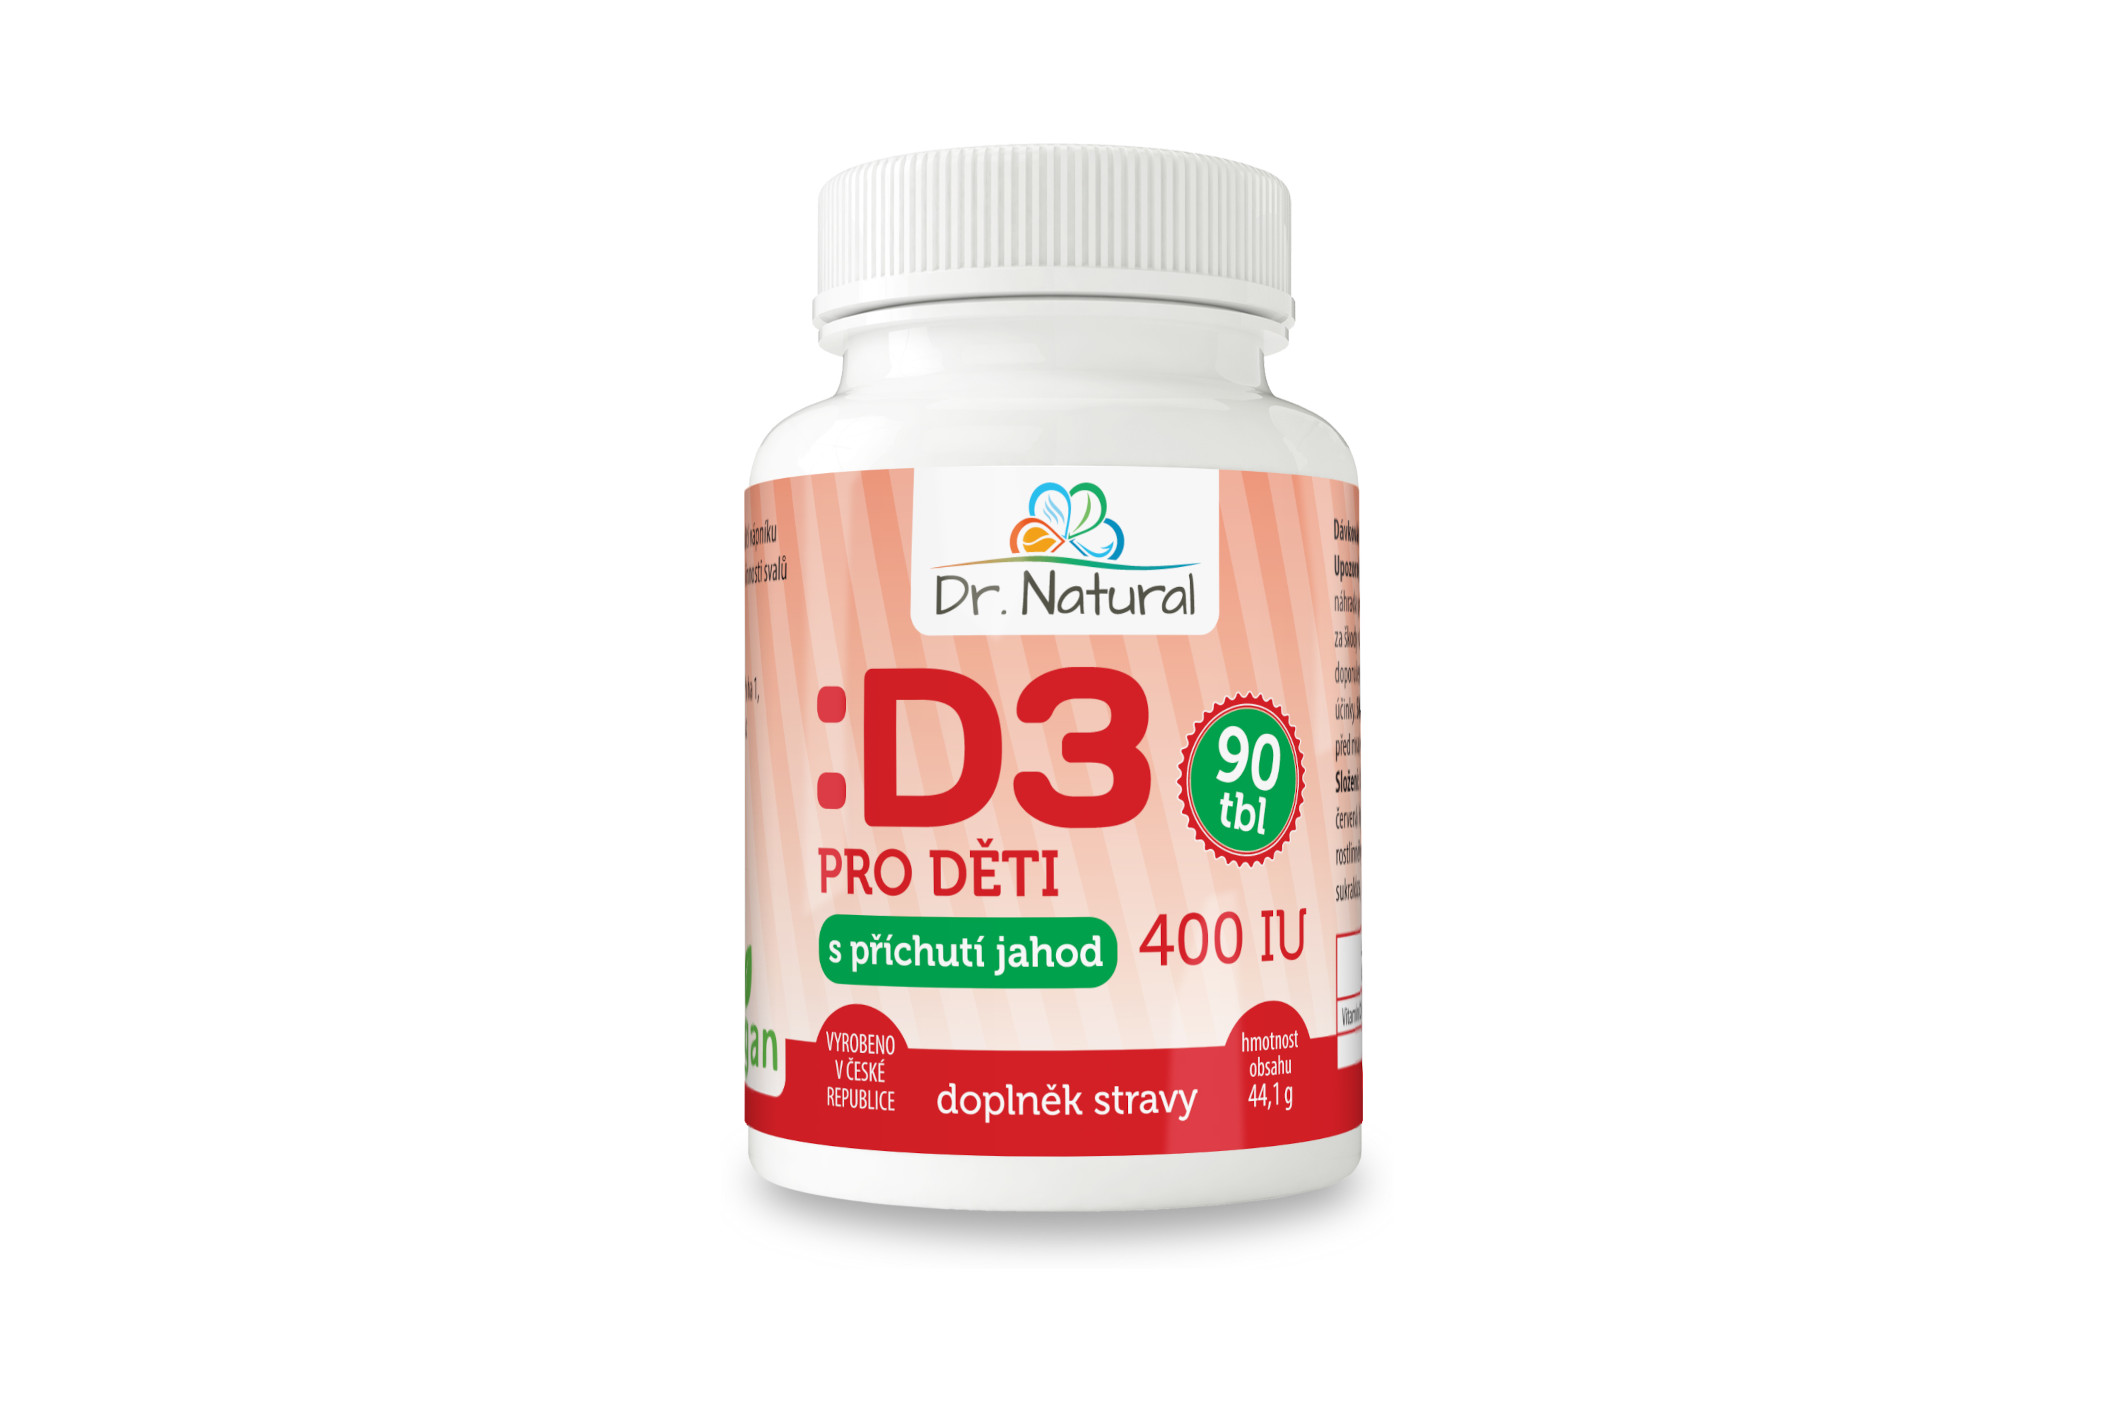 Natural Jihlava Vitamín D3 pro děti s příchutí jahod 400 IU 90 tbl. - Dr. Natural 44g